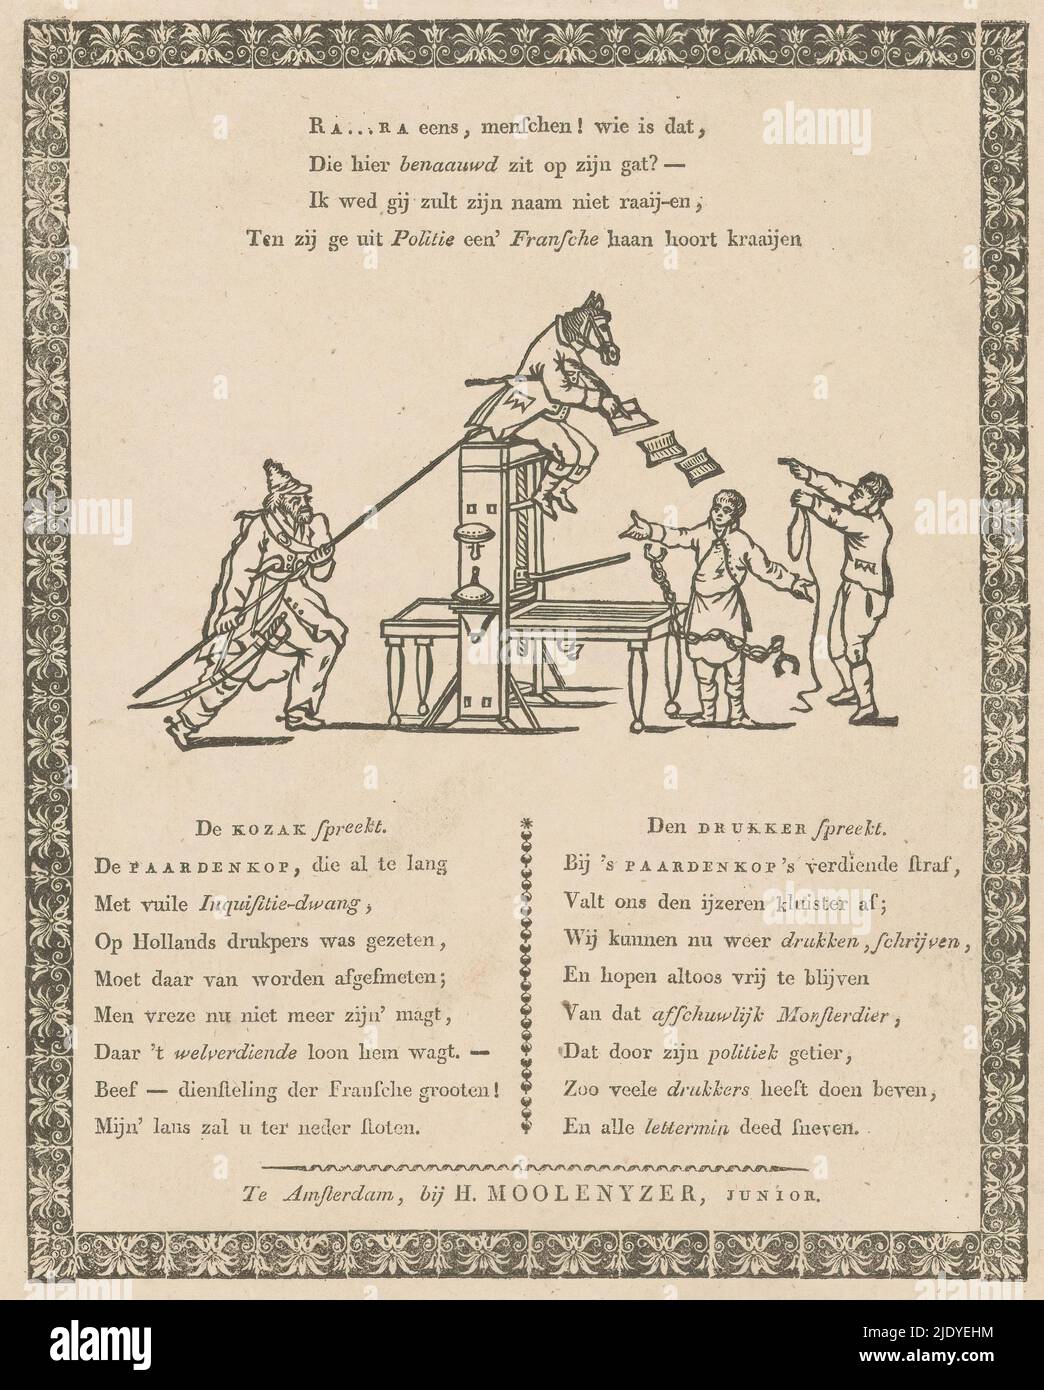 Karikatur zu Van Ray, Inspektor des Buchhandels, während der französischen Regierung, 1813., Karikatur zu C.A. van Raay, Inspektor oder Zensor des Buchhandels, während der französischen Regierung, die 1813 fiel. Ein Mann mit Pferdekopf, der auf einer Druckmaschine sitzt, wird von einem Kosaken mit seiner Lanze abgestoßen. Rechts stehen zwei Drucker, als sie das sehen, fallen die Manschetten aus ihren Händen. Über der Darstellung ein vierzeiliger Vers; unter der Darstellung ein 16-zeiliger Vers in zwei Spalten., Druckerei: Anonym, Verleger: H. Moolenijzer jr., (auf Objekt erwähnt), Druckerei: Niederlande, Verleger: Am Stockfoto